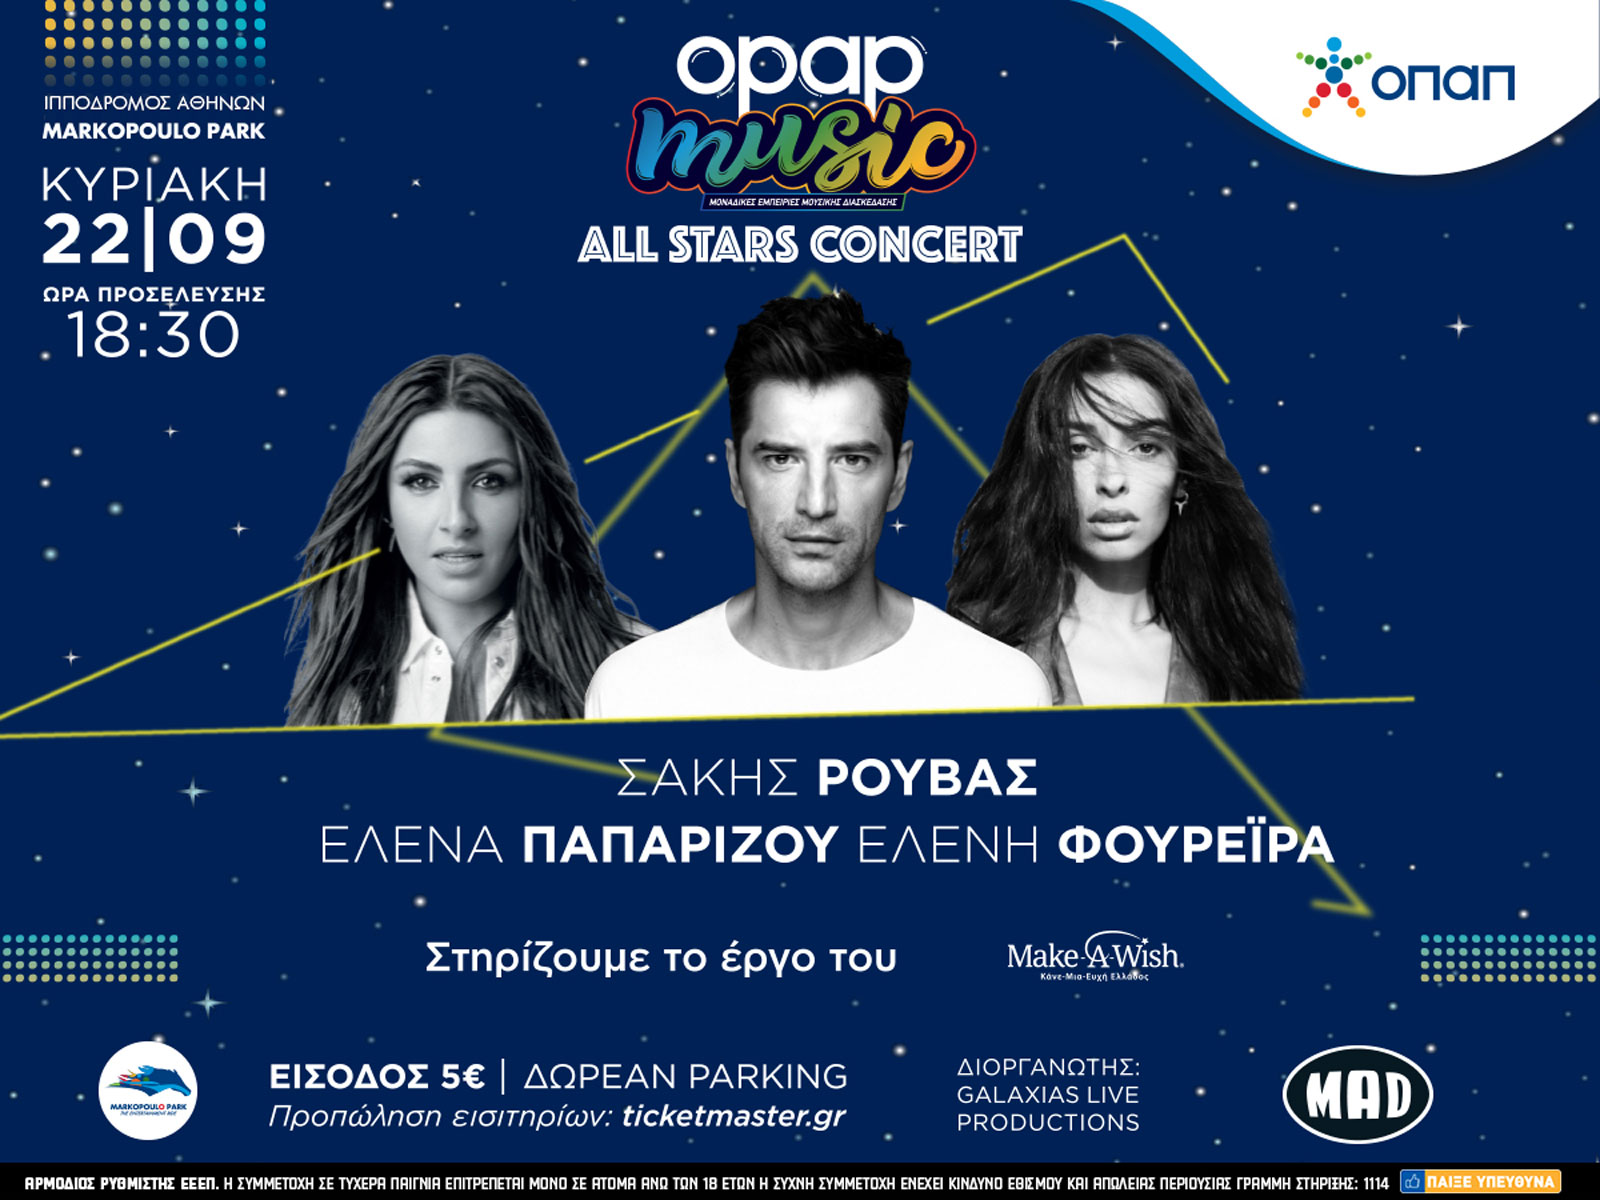 Η Dream Team της ελληνικής pop στον Ιππόδρομο σε μια εκρηκτική συναυλία από τον ΟΠΑΠ